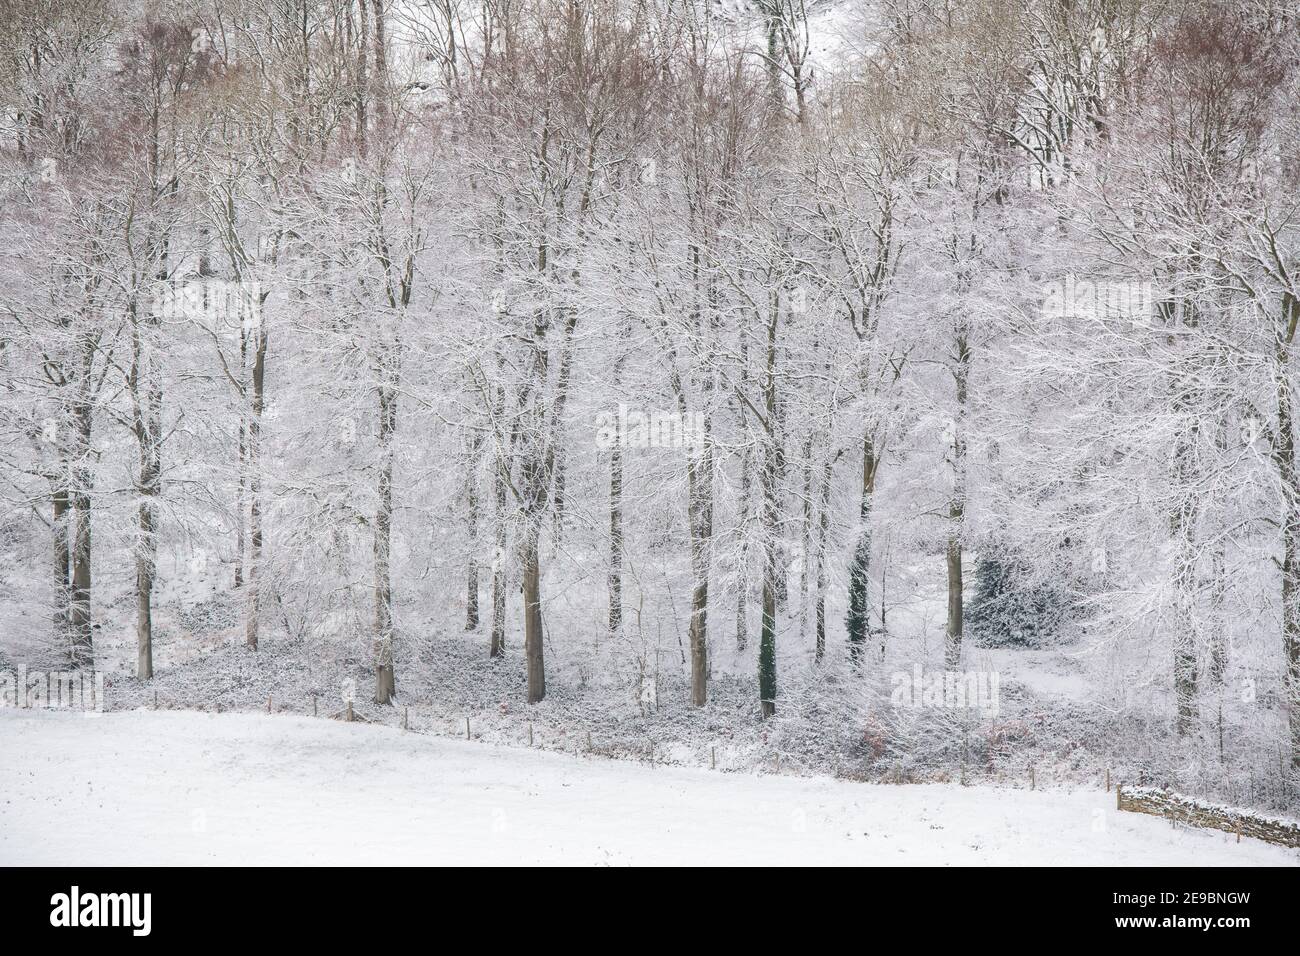 En janvier, dans la campagne des cotswolds, des arbres et des champs ont été enneigés. Lower Coscombe, Cotswolds, Gloucestershire, Angleterre Banque D'Images